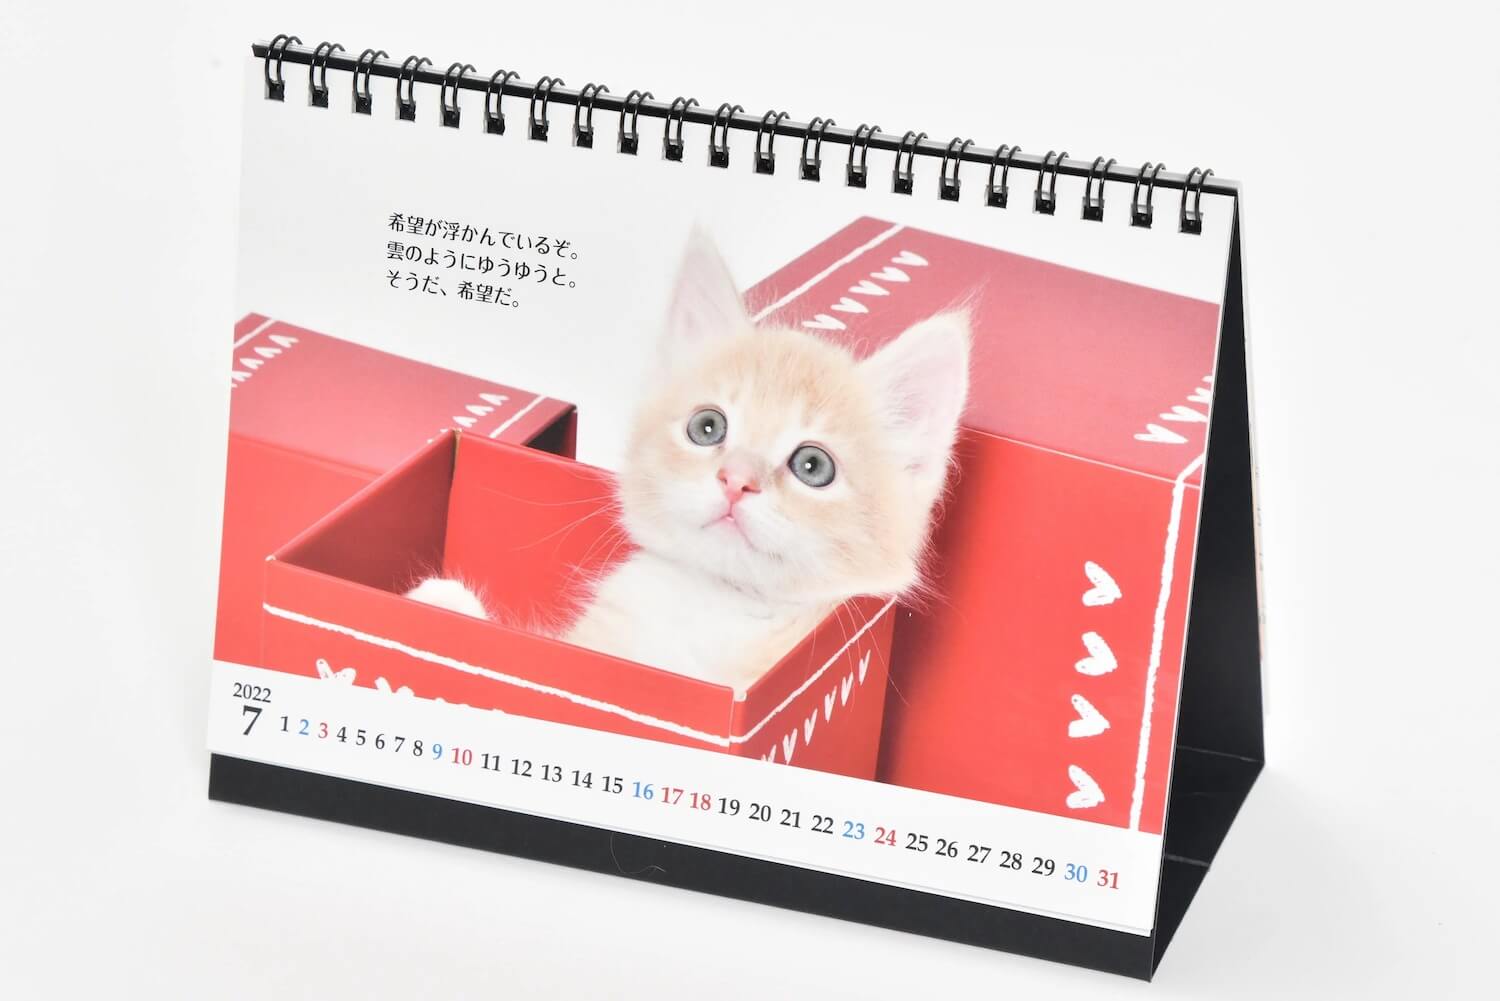 子猫の写真と志茂田景樹の名言がプリントされたカレンダー「猫様のお言葉 ネ・コ・ト・バ2022」